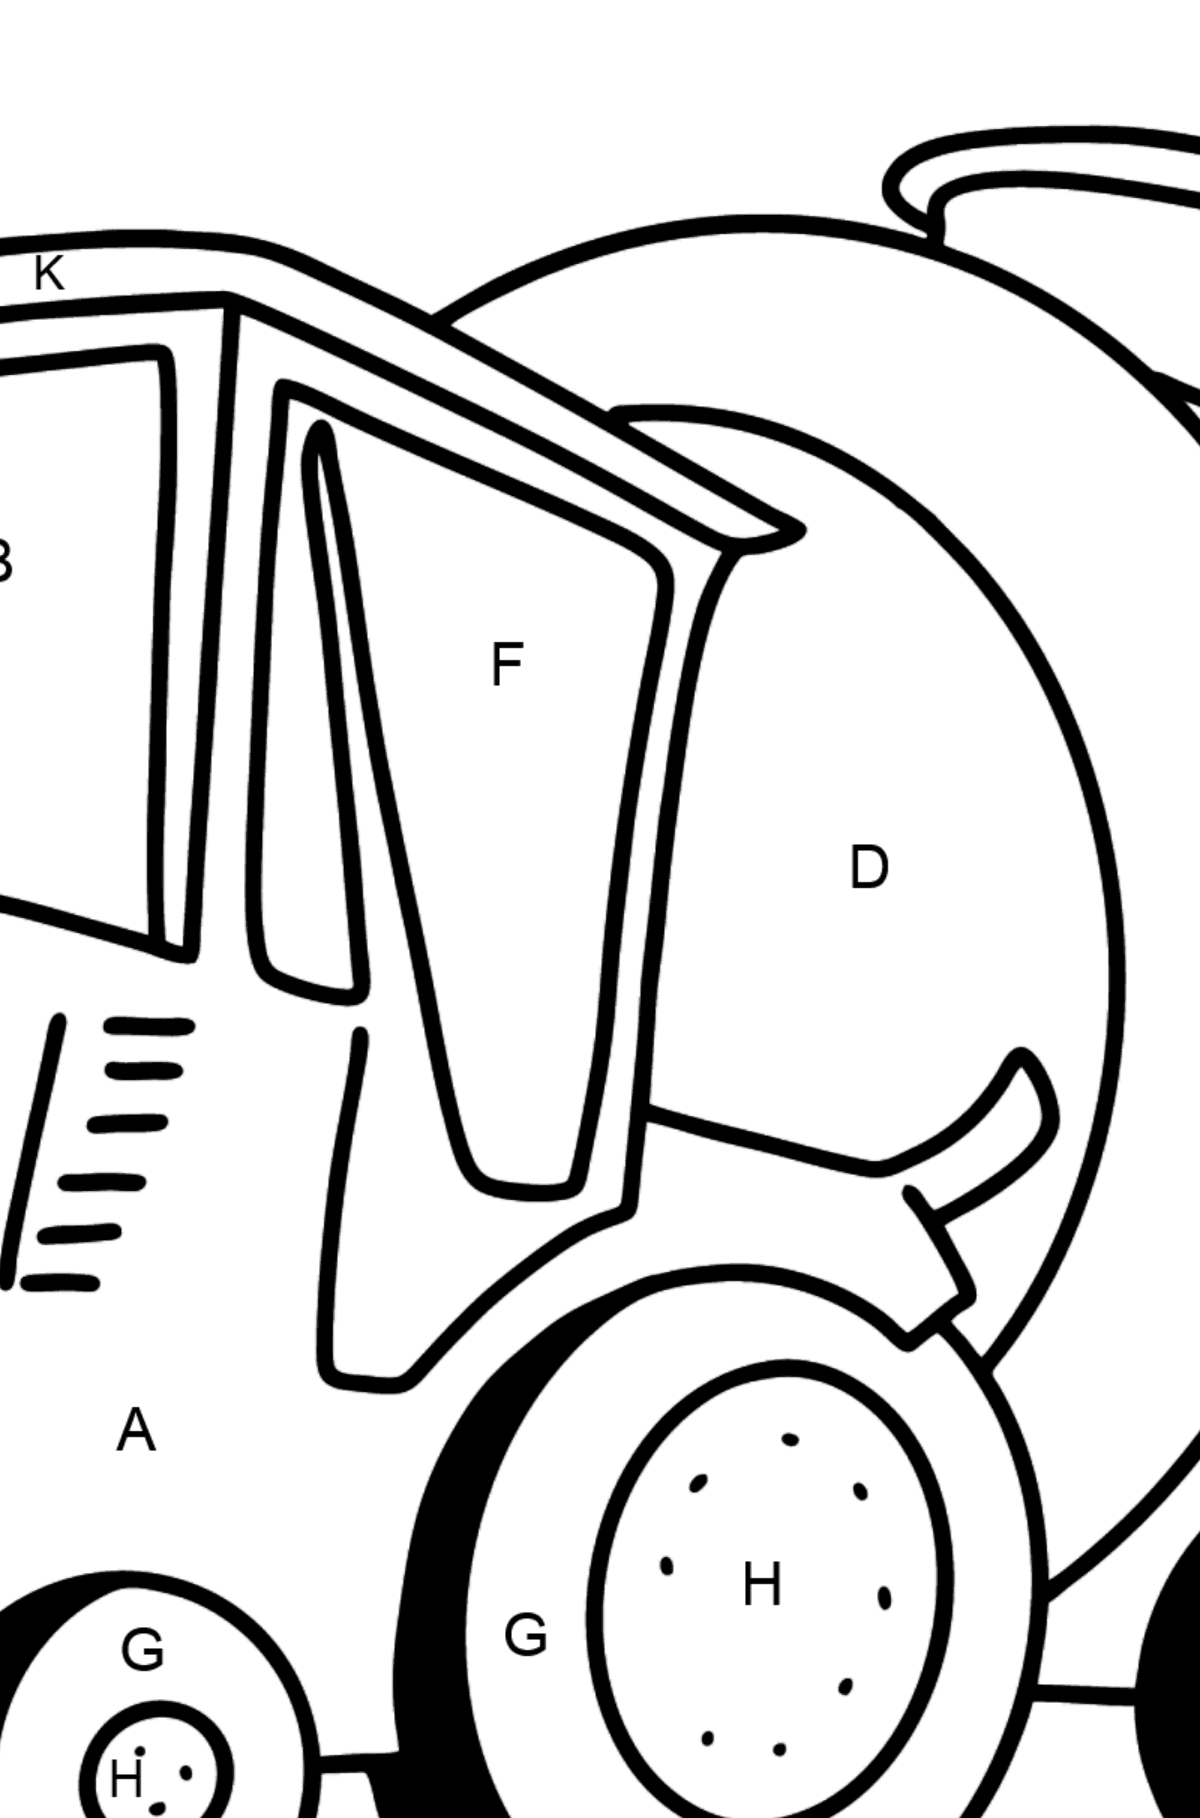 Coloriage - Tracteur avec remorque à eau - Coloriage par Lettres pour les Enfants